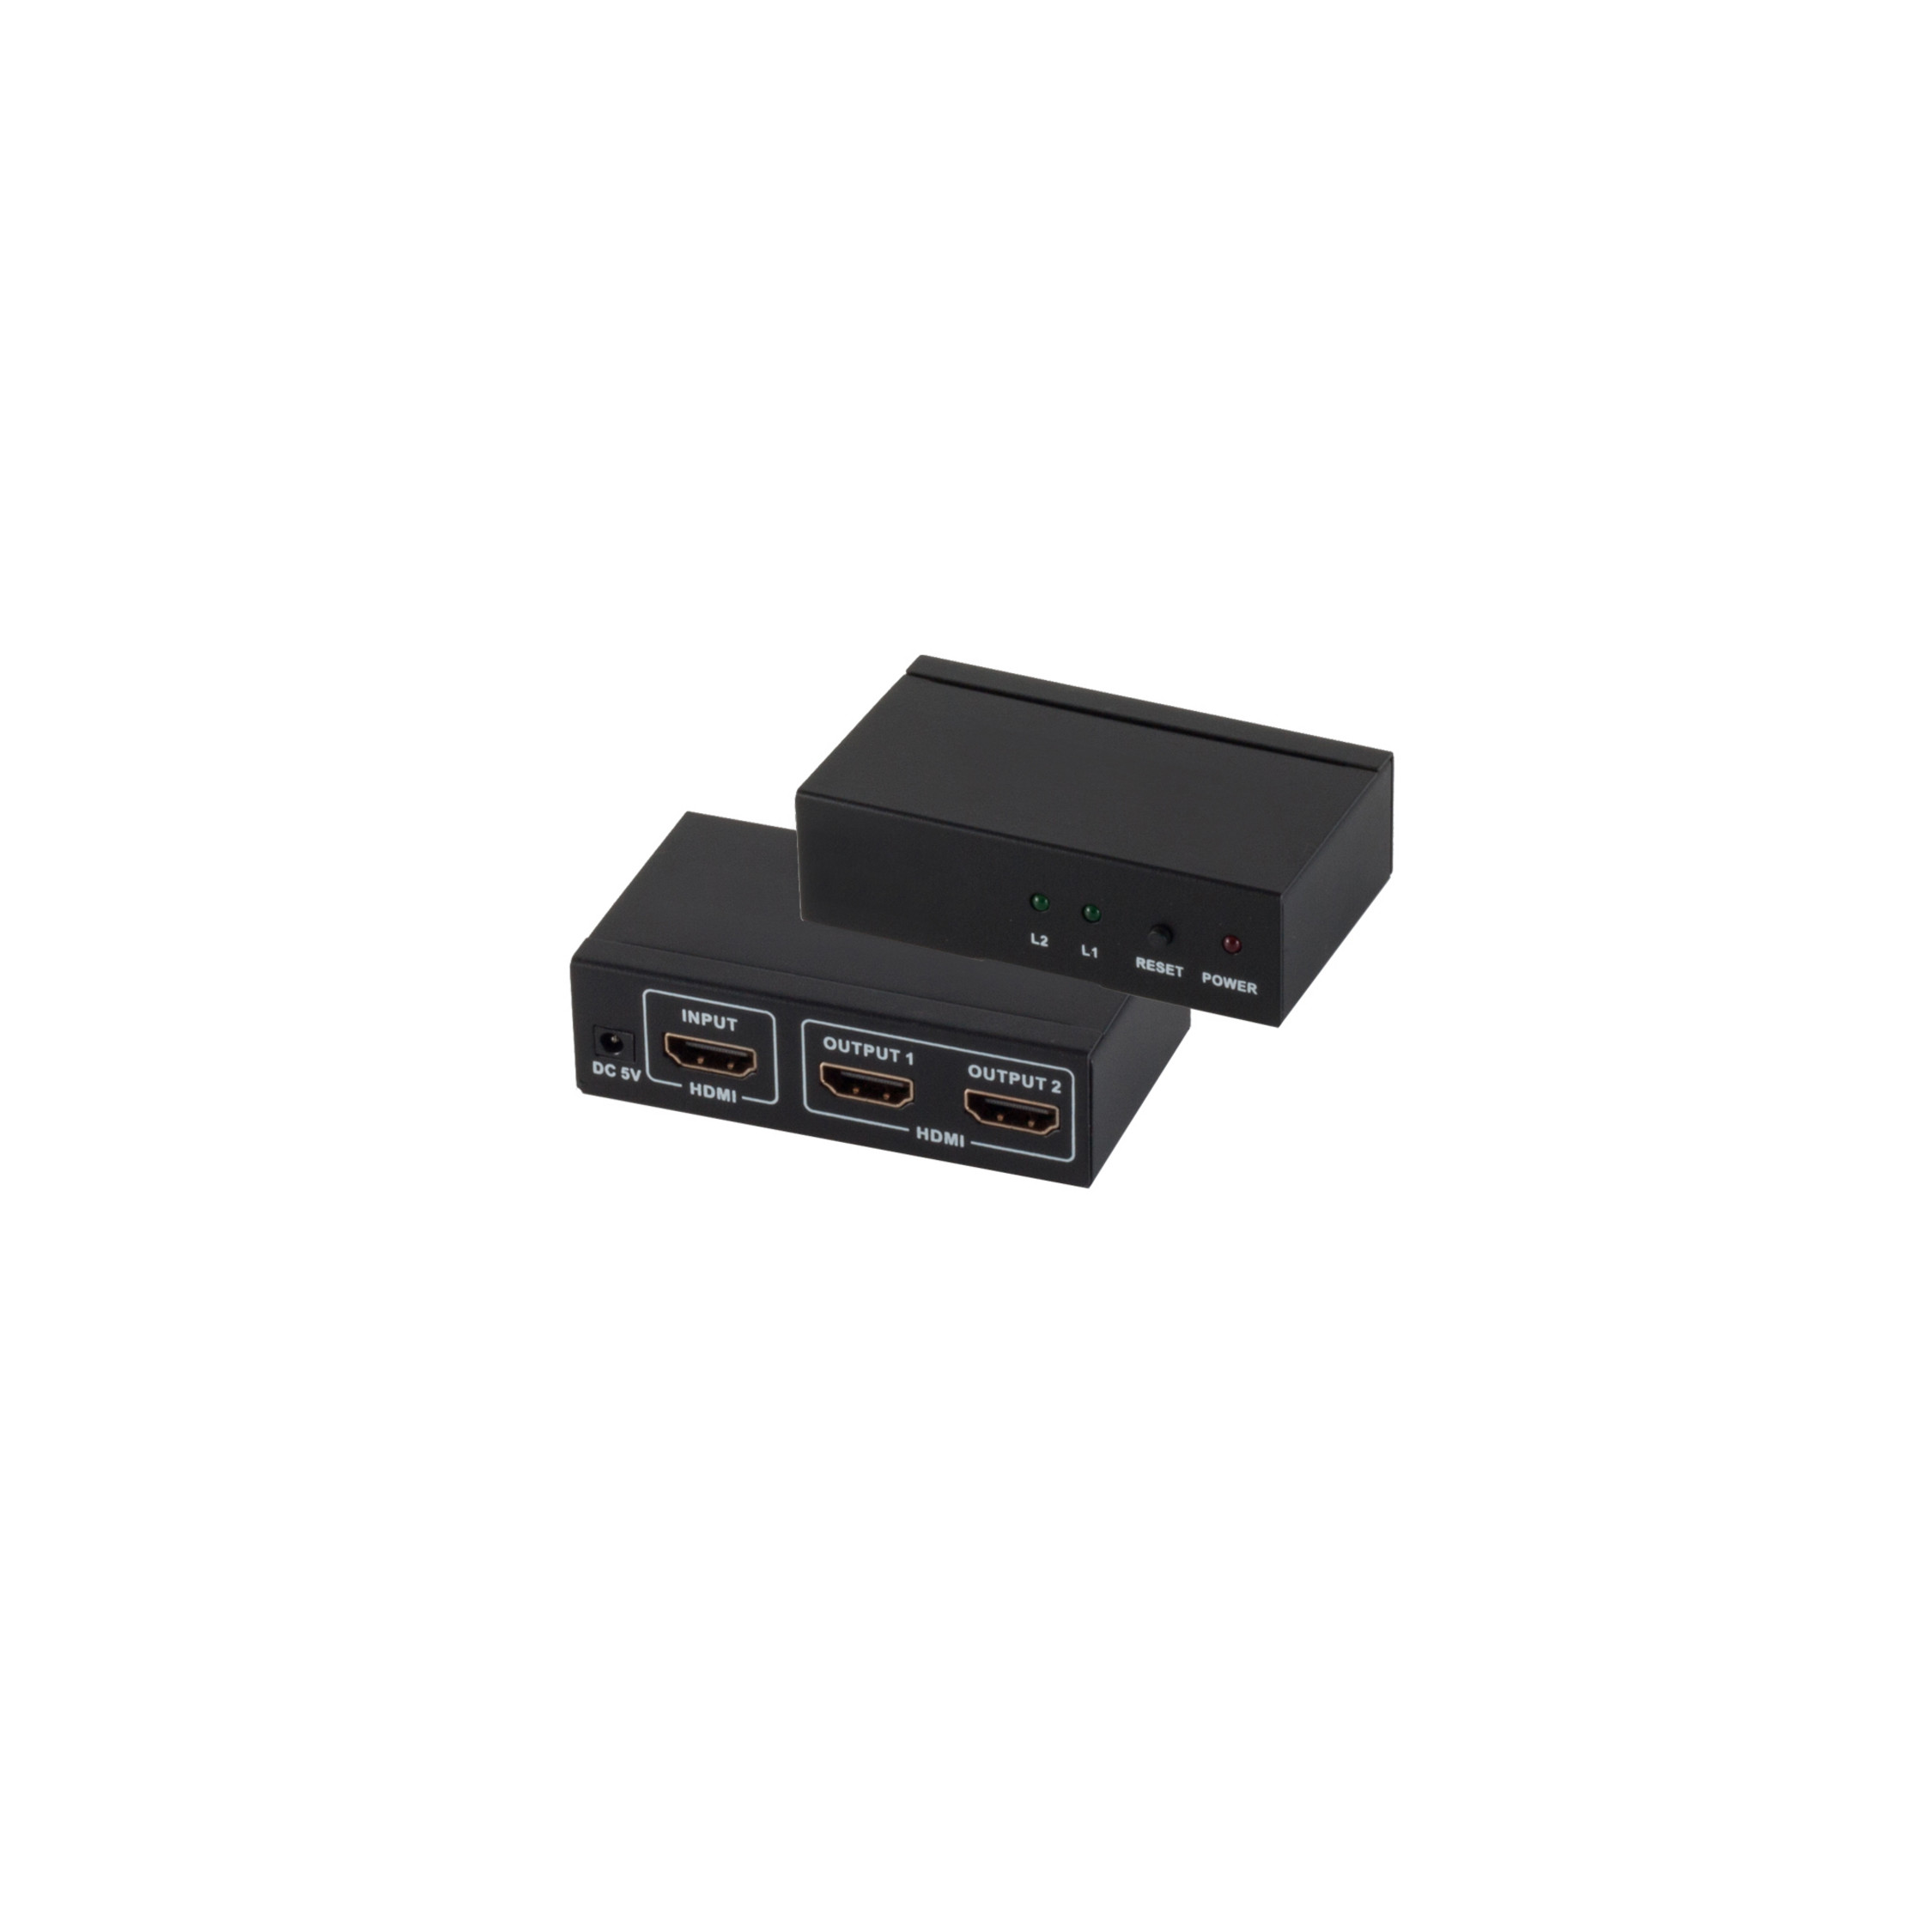 MAXIMUM S/CONN x & 4K2K 1 HDMI-Verteiler, OUT Netzteil, IN CONNECTIVITY 2 Umschalter Verteiler x 3D